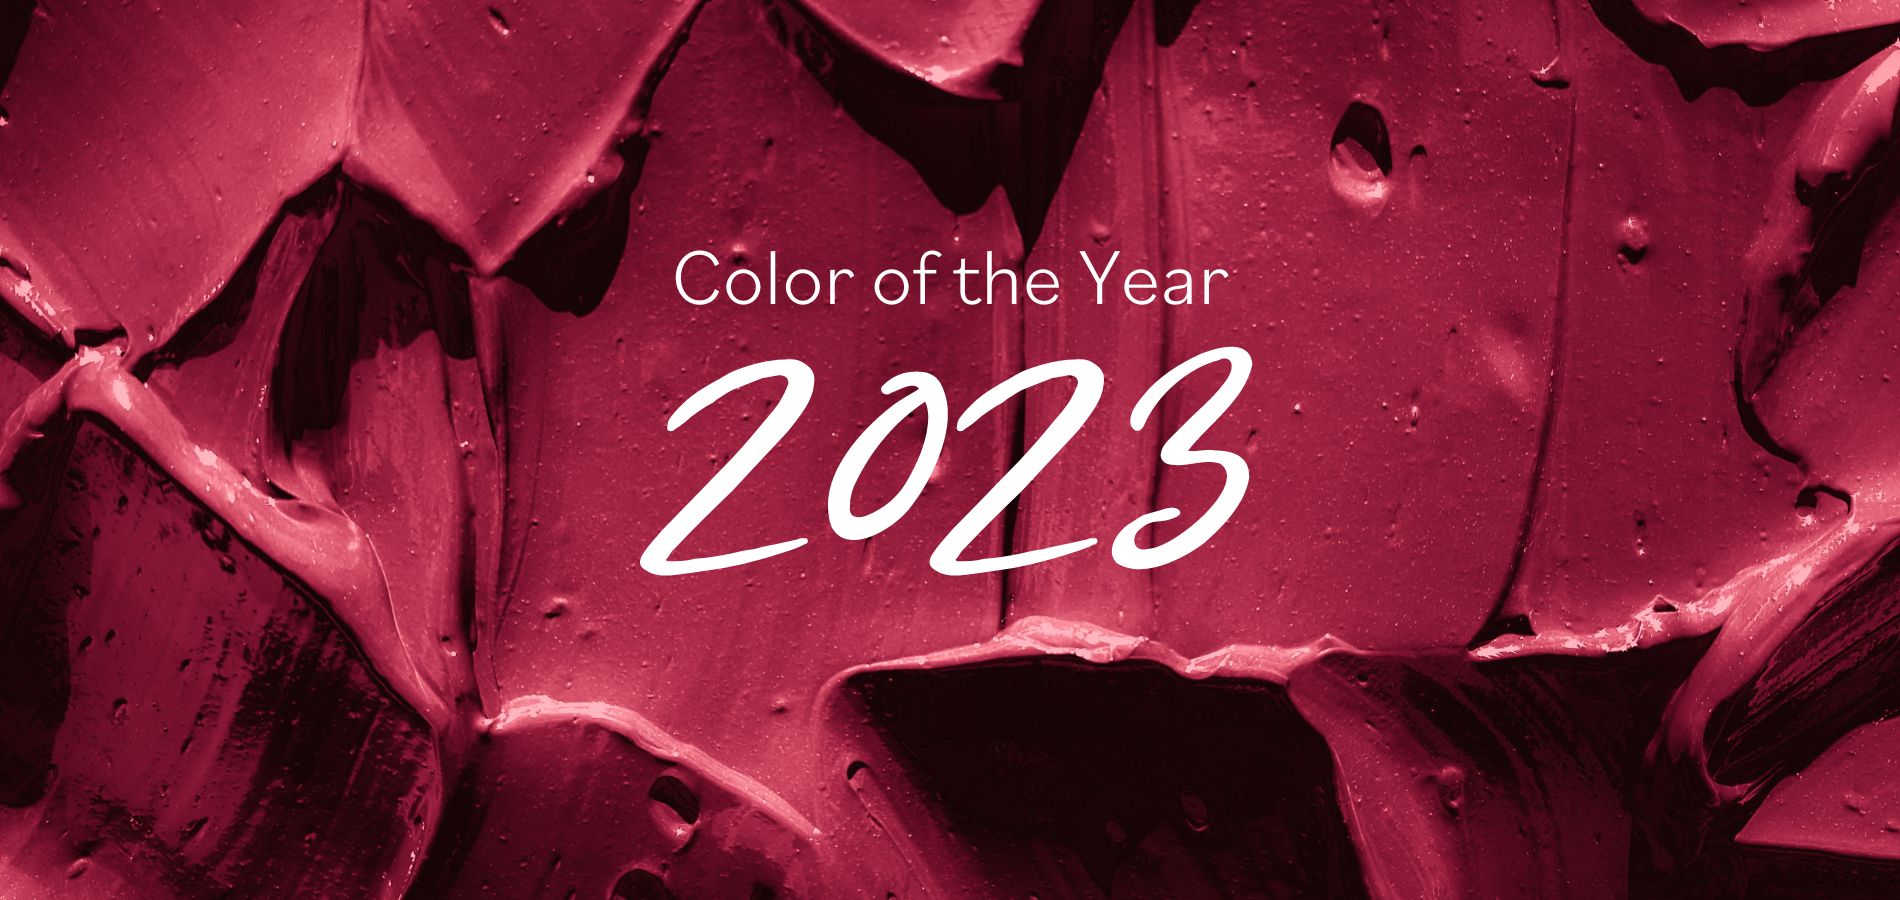 Kolor Roku 2023 Power Berry - Polecane zdjęcie na stronie internetowej